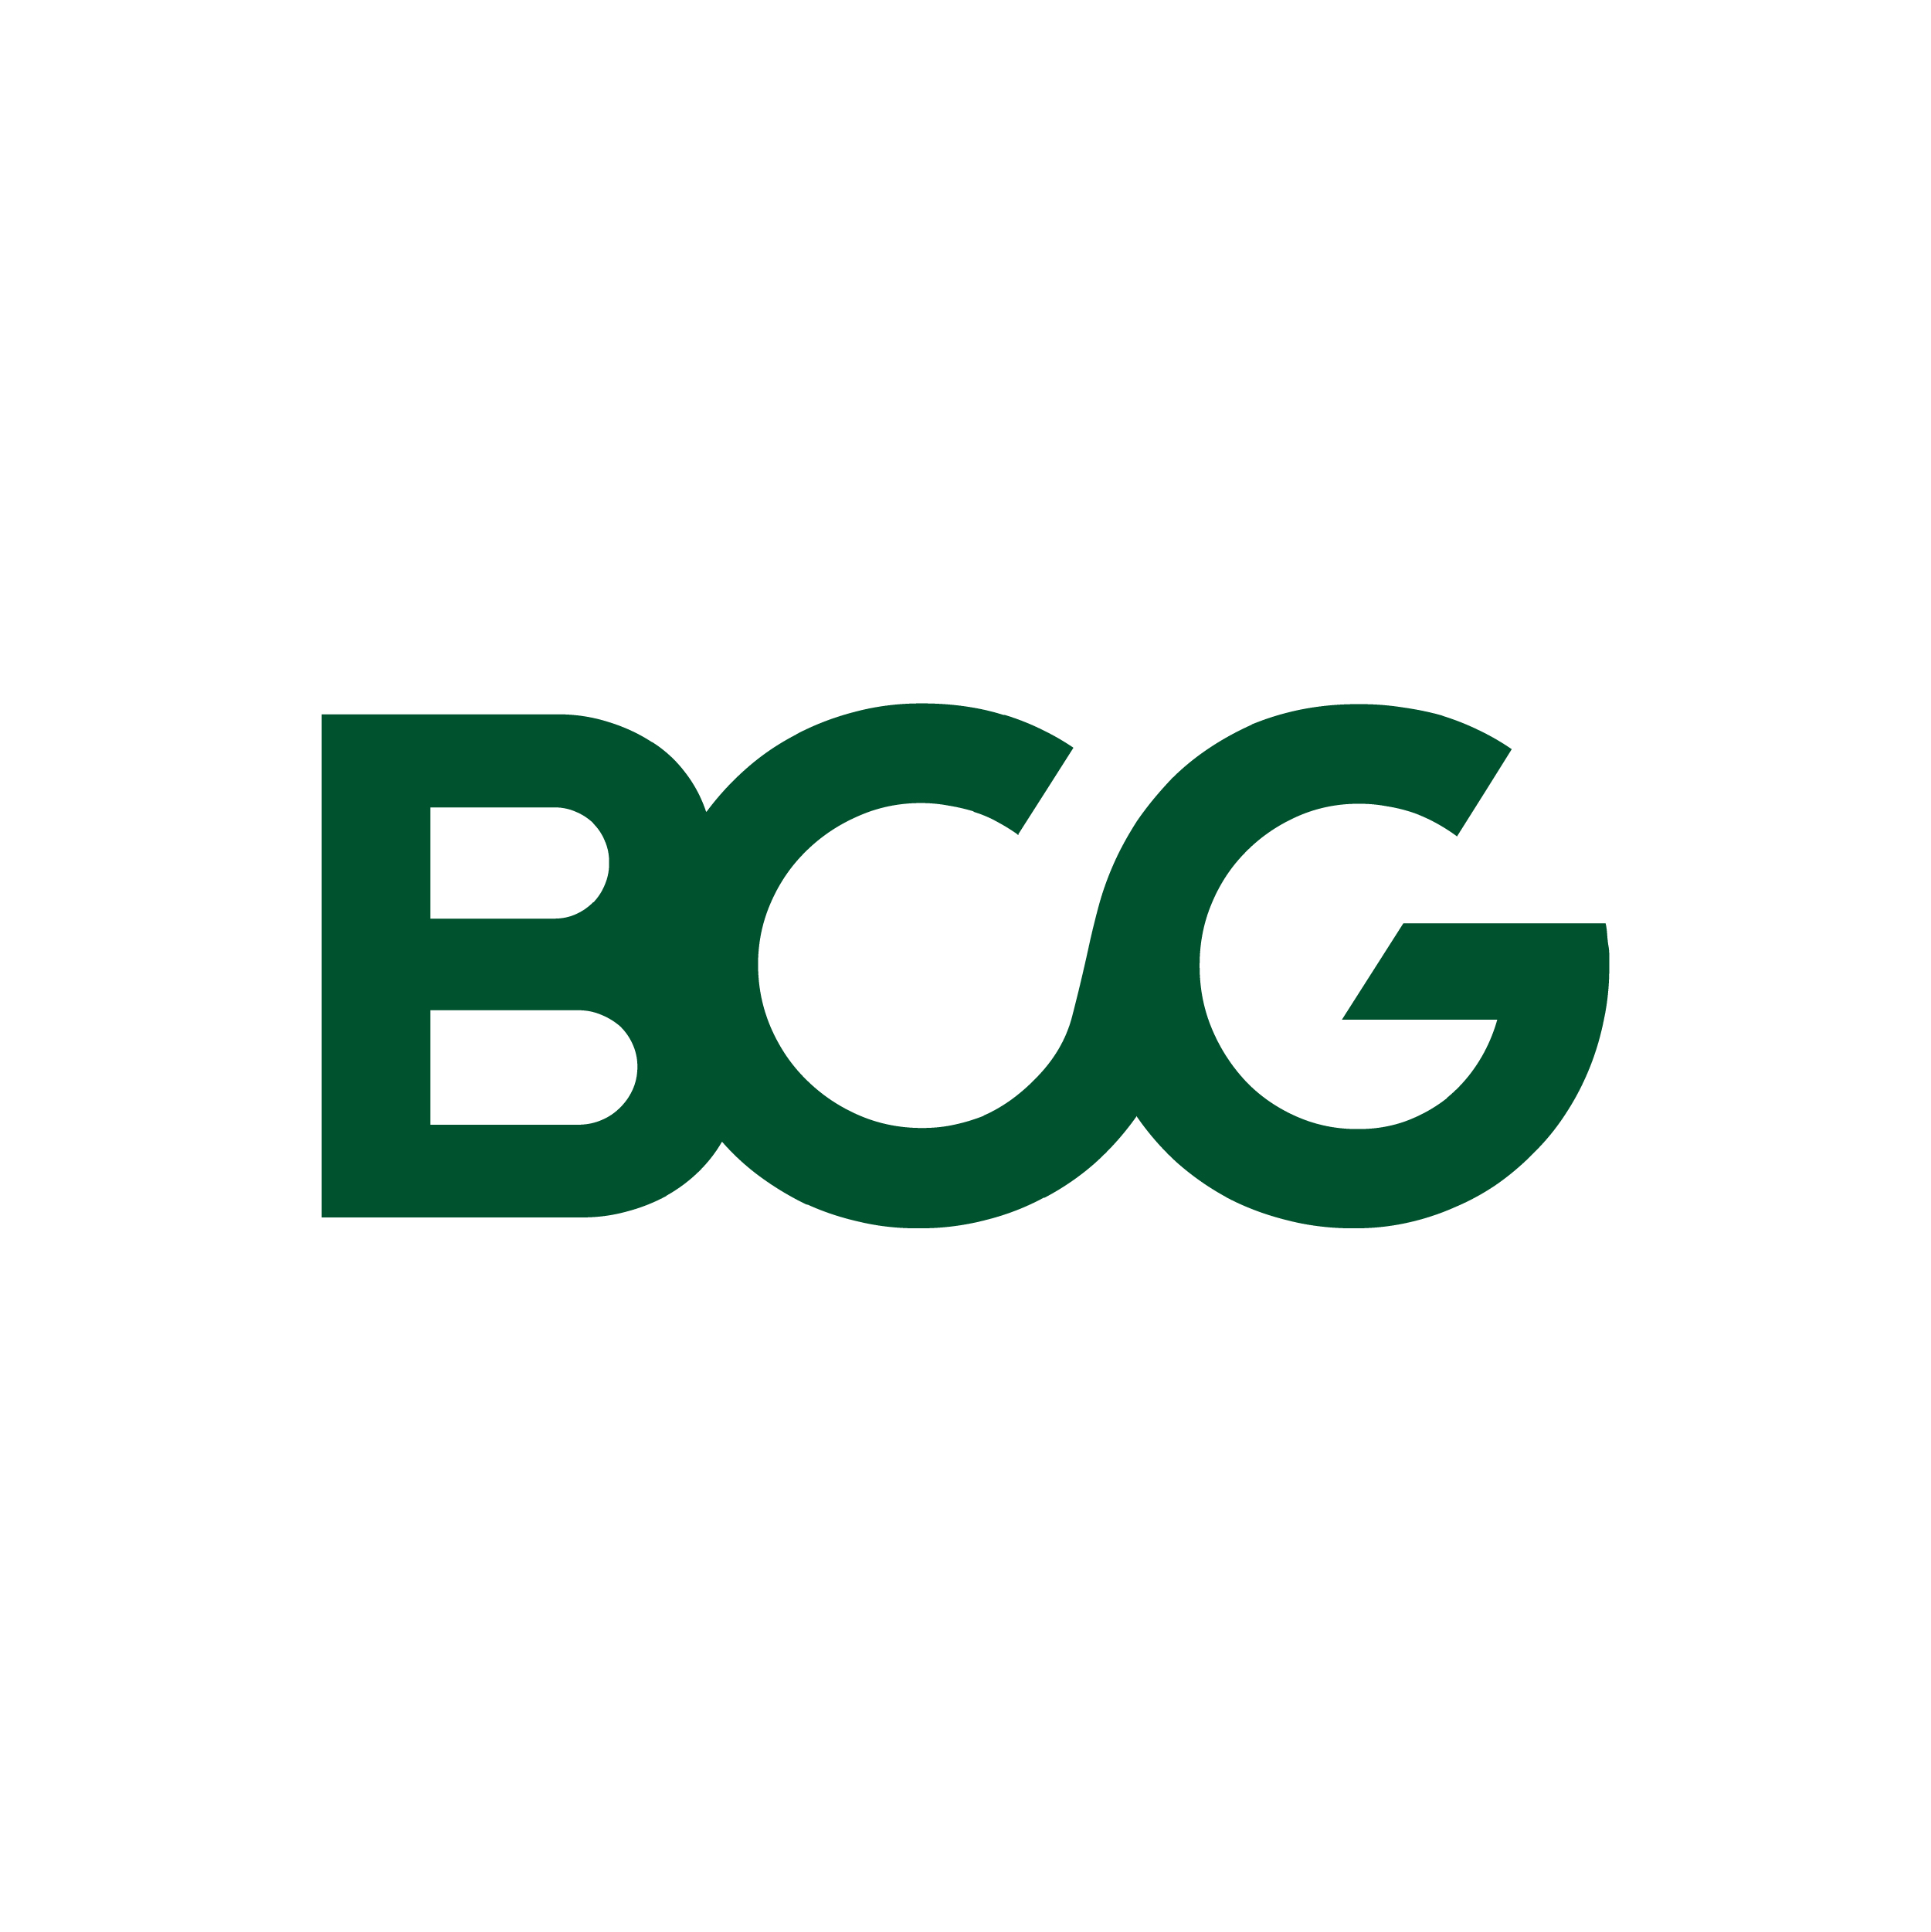 BCG logo 